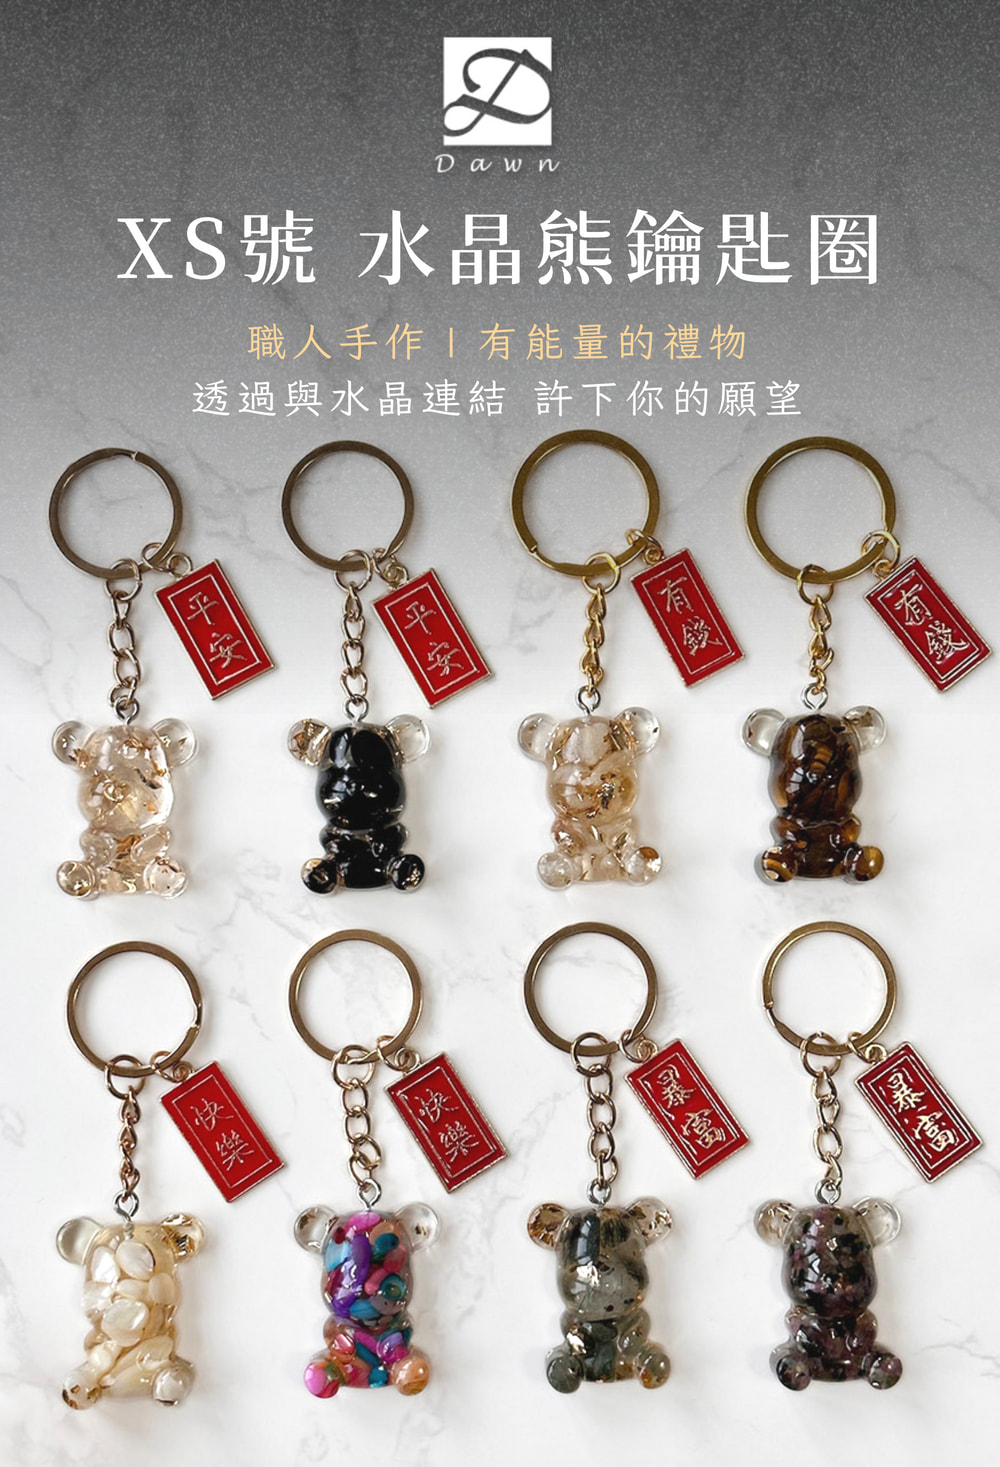 彤恩時尚-LINE禮物-XS號熊鑰匙圈3入組 (2)